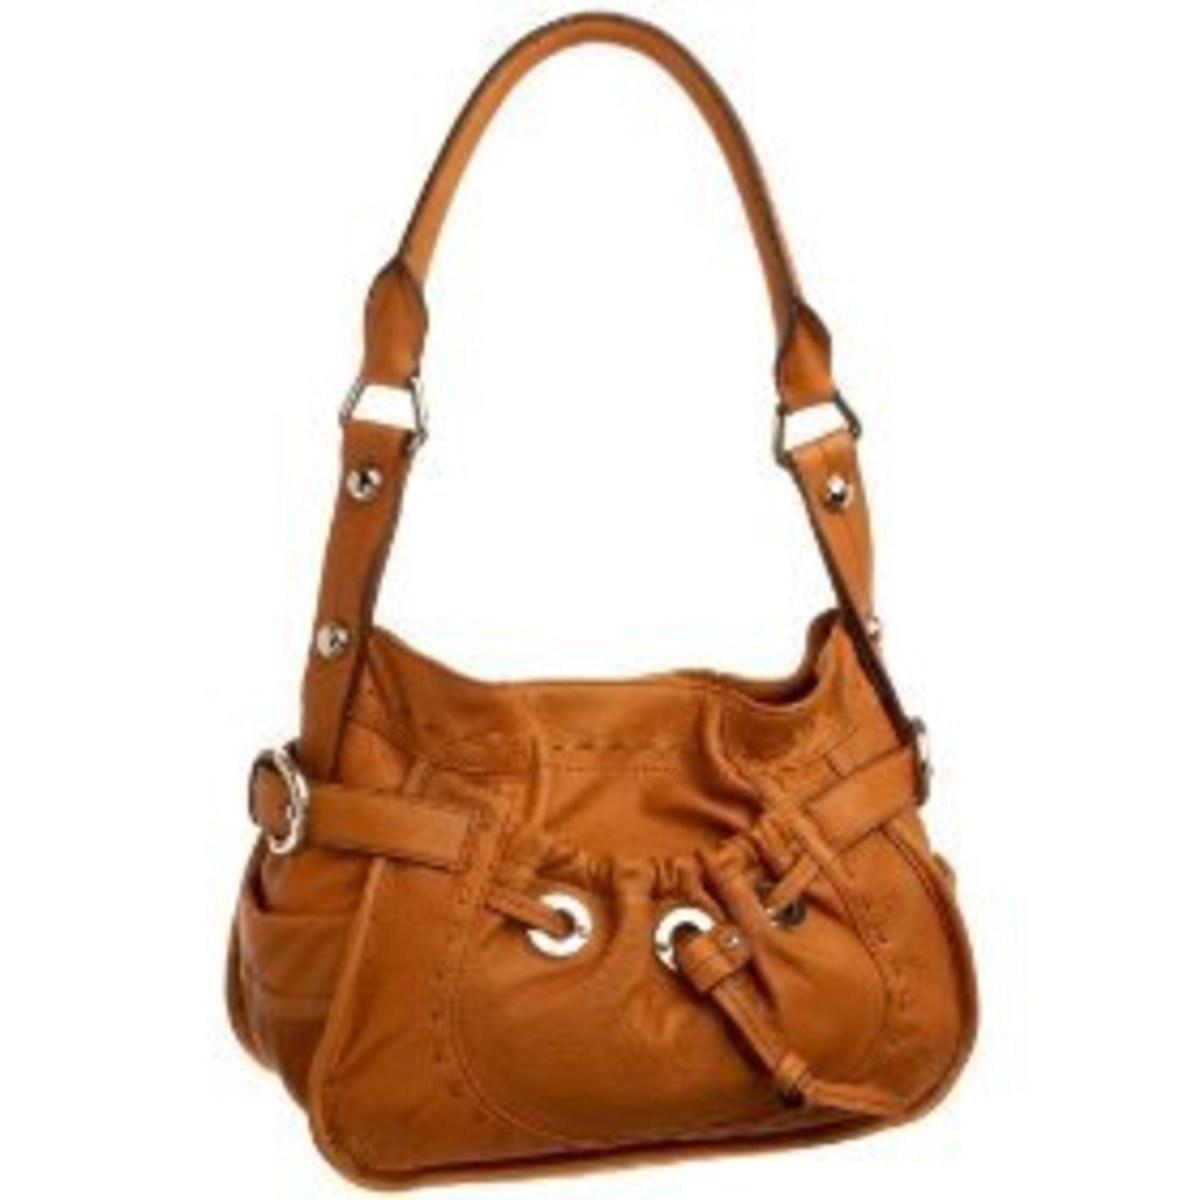 Big Huge Soft Brown leather B. Makowsky purse shoulder bag 15